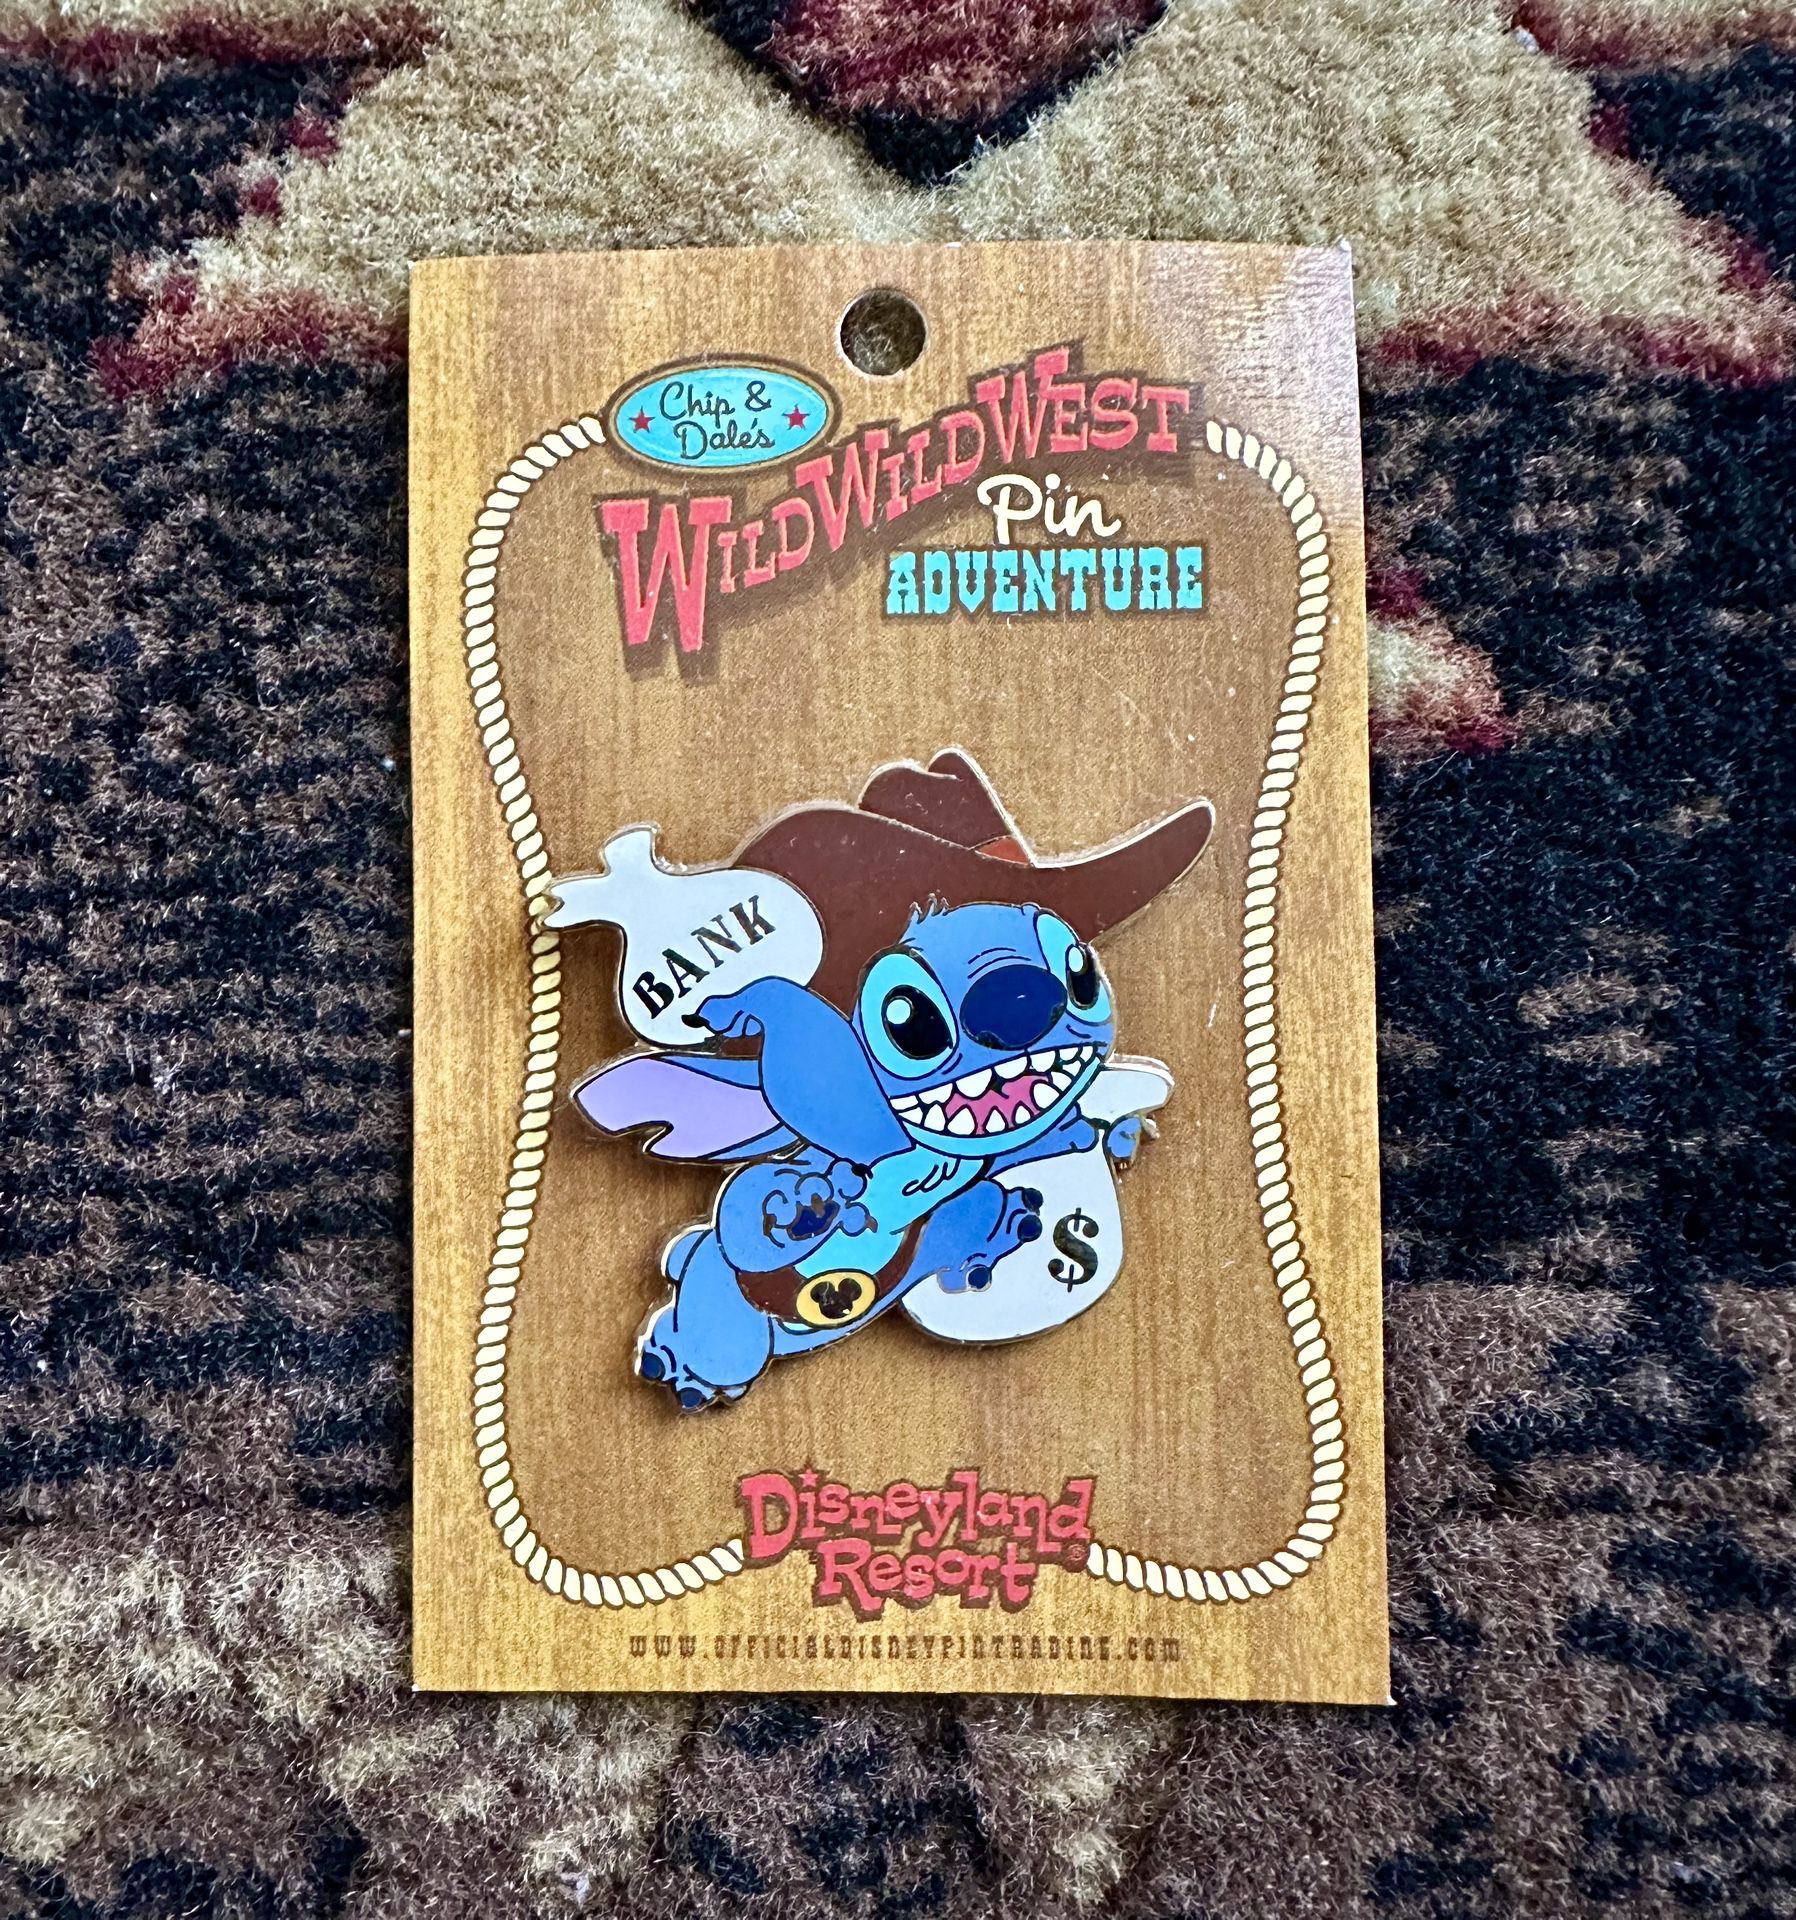 Disney Stitch Wild West Adventure Pin